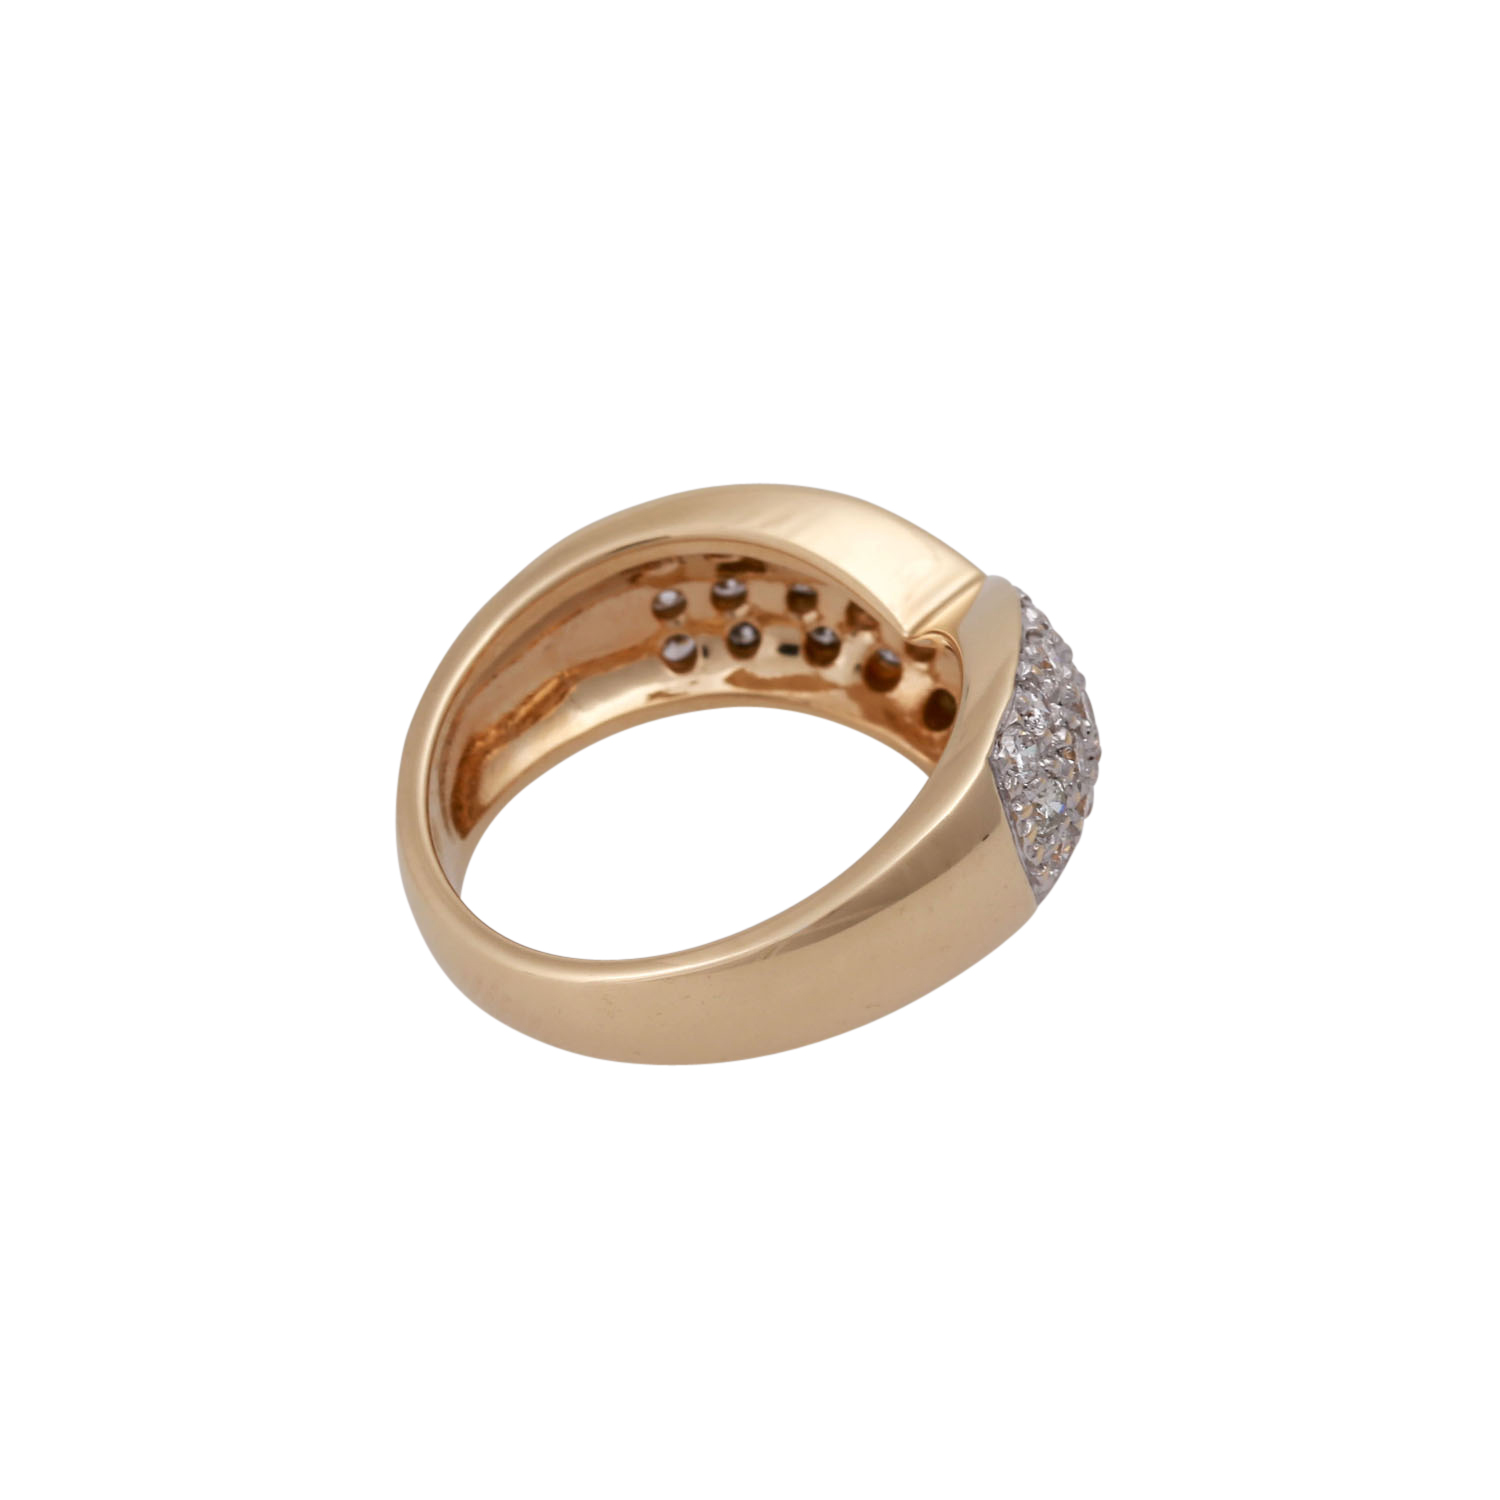 DIEMER Ring mit 33 Brillanten zus. ca. 1,6 ctvon guter Farbe und Reinheit, GG 14K, RW: 50, Ende - Image 3 of 4